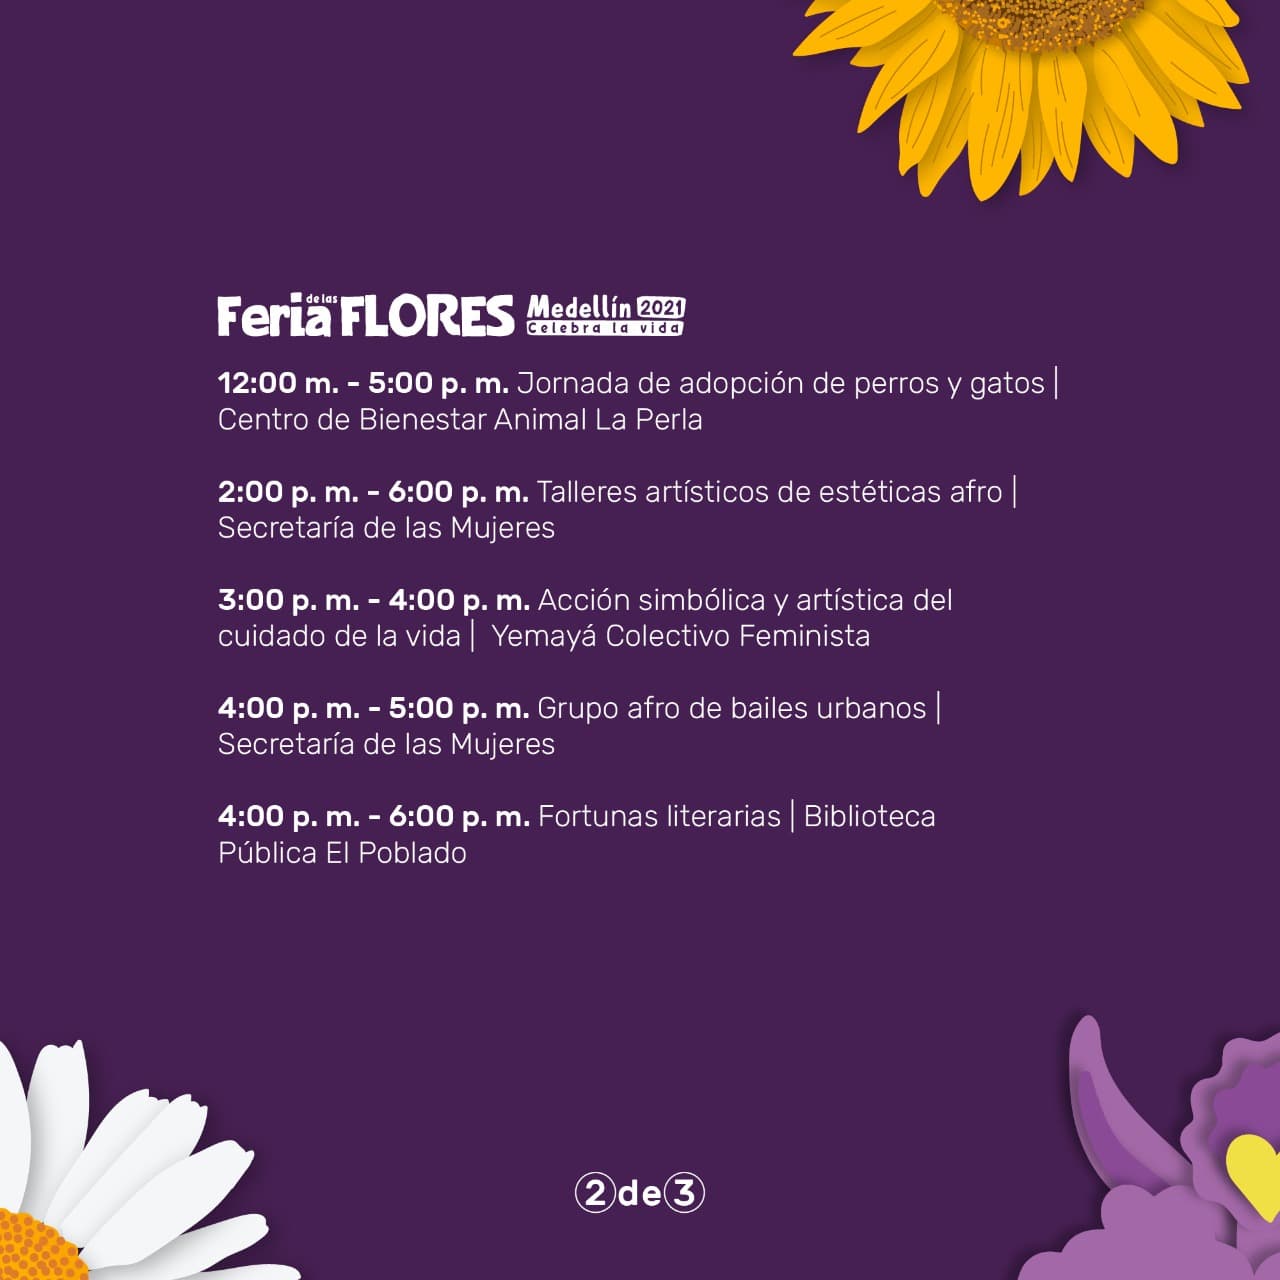 Programación de la Feria de las Flores llega al parque El Poblado